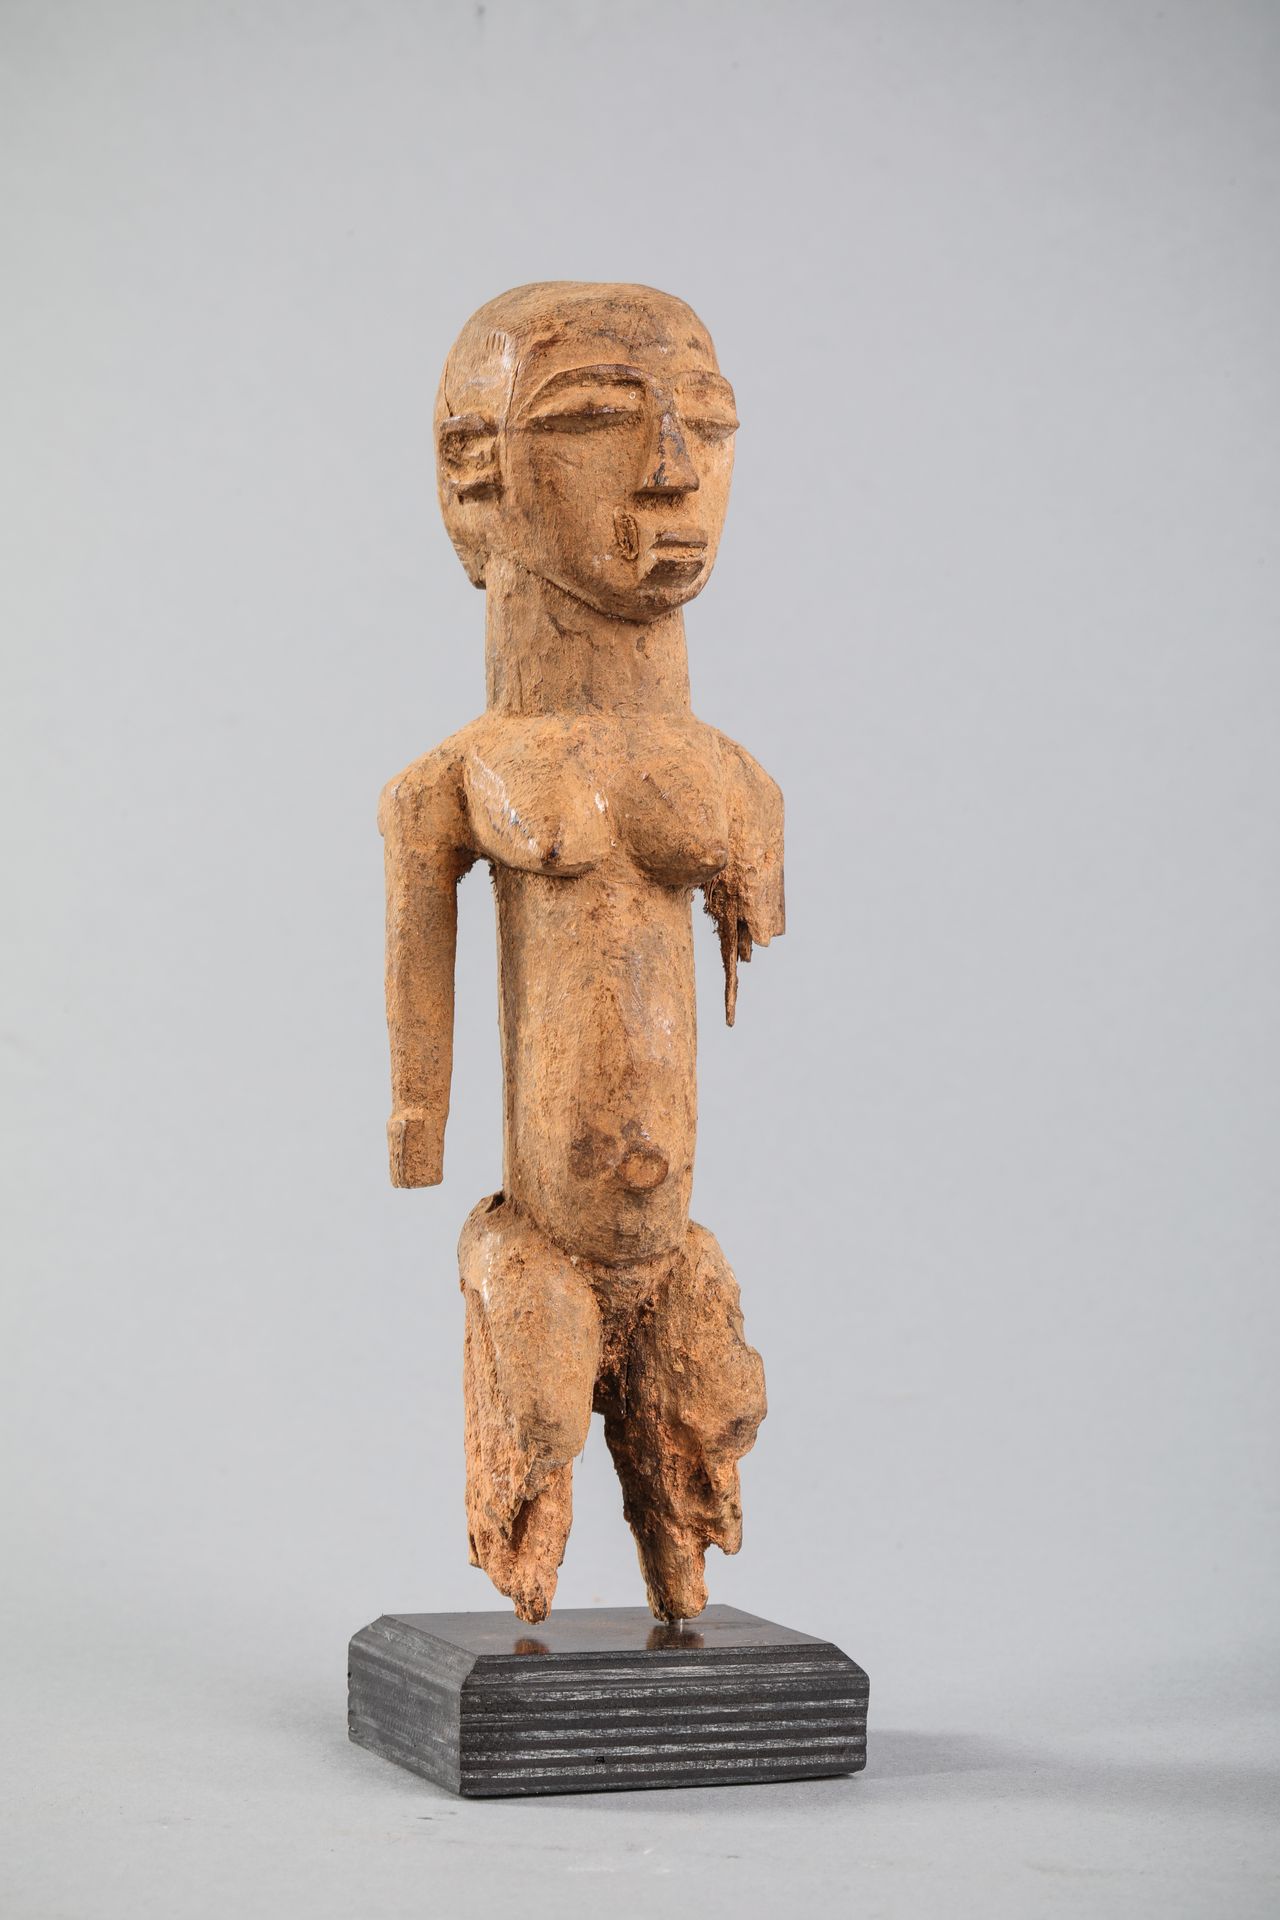 Null 洛比女性雕像，布基纳法索。坚硬的木头，有浅棕色，略带土黄色的铜锈，腿部有旧的侵蚀。高21厘米。